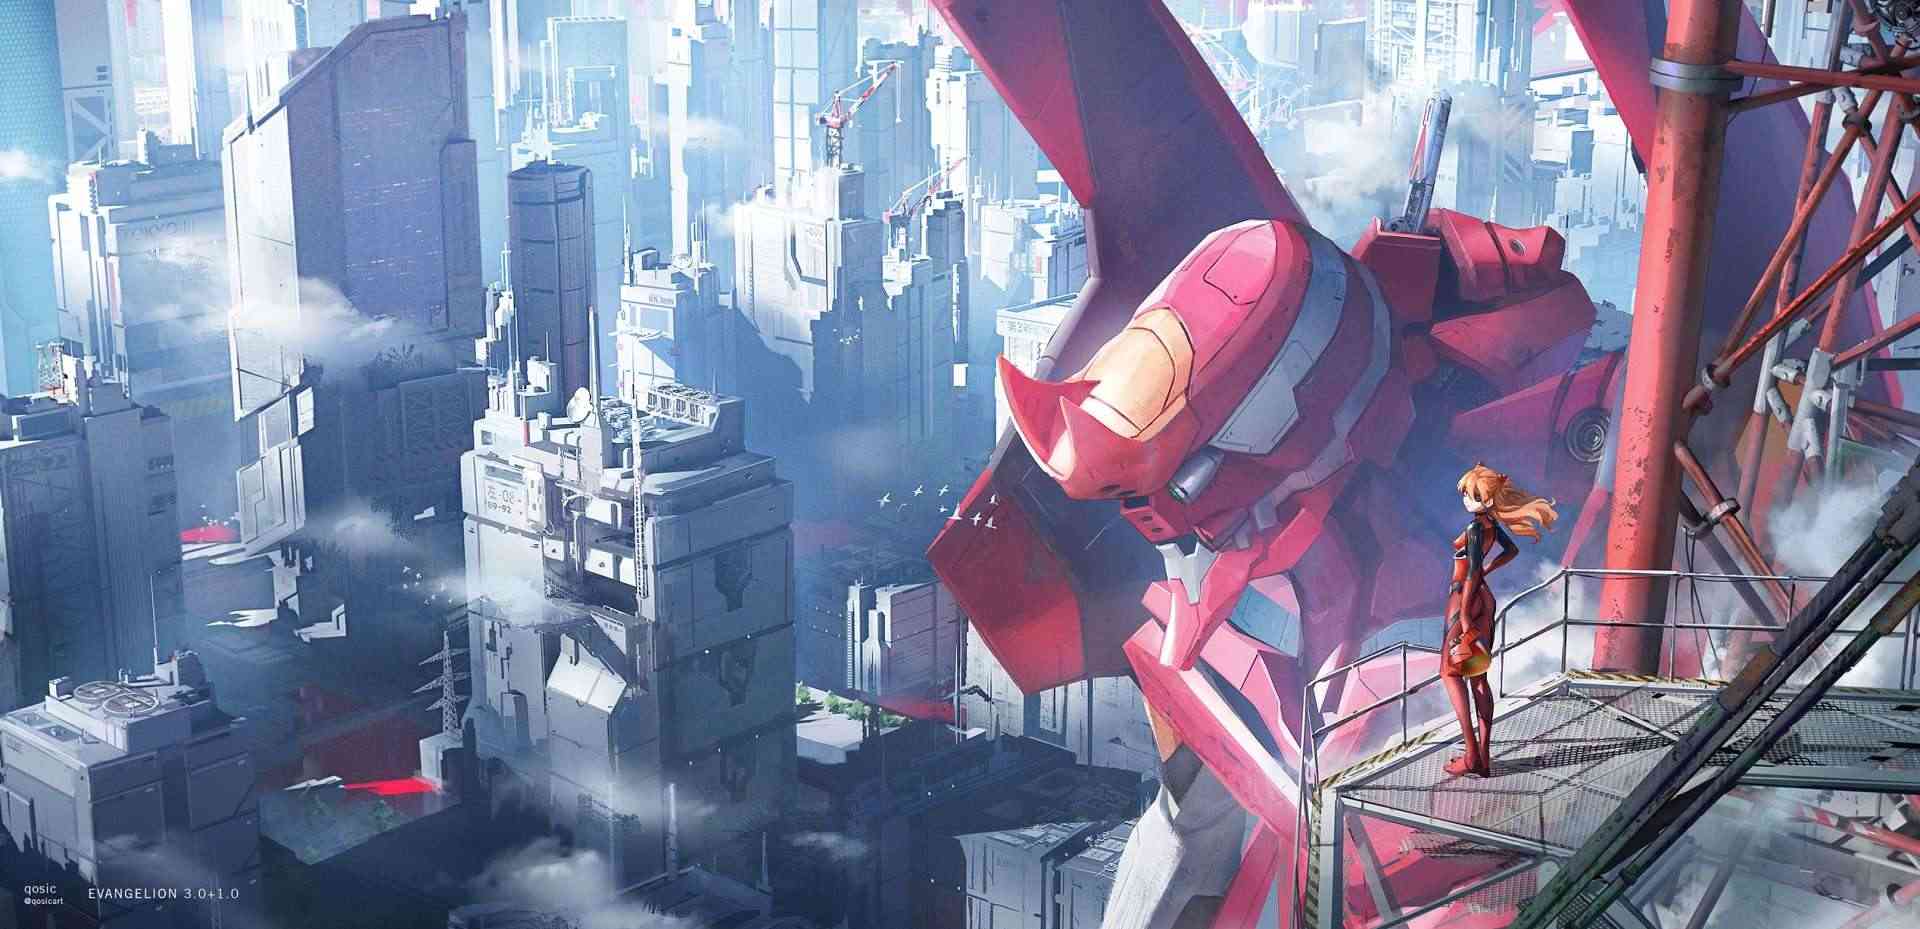 Đạo diễn Anno Hideaki tiết lộ về việc sẽ có thêm nhiều dự án mới thuộc thương hiệu Evangelion ra mắt trong tương lai